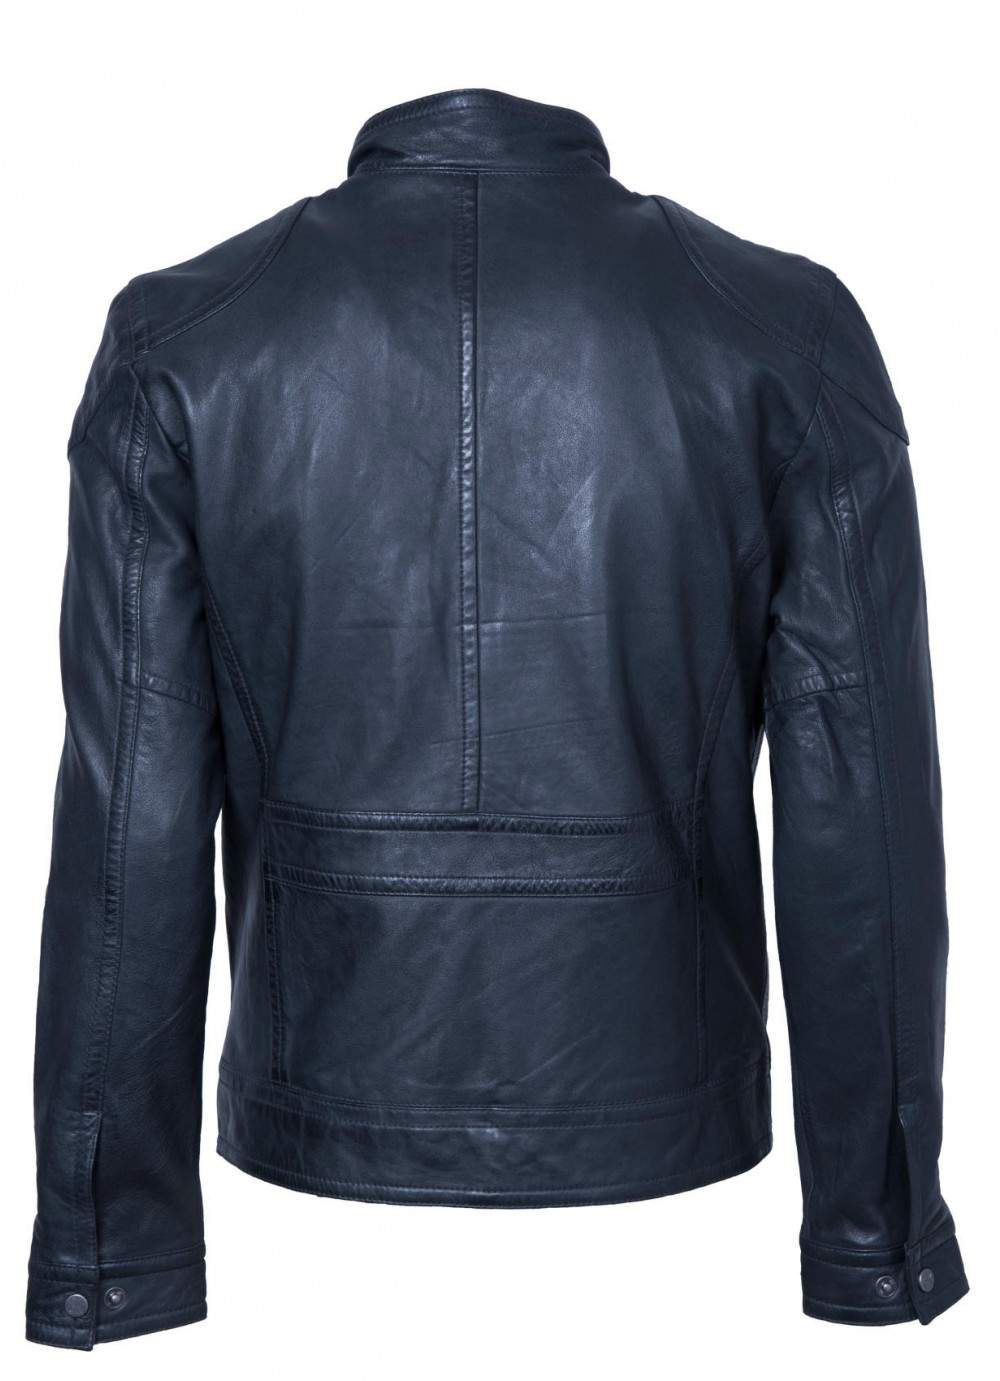 Genuine Lakeland Mens Dark Navy Manx Biker Leather Jacket Size 40